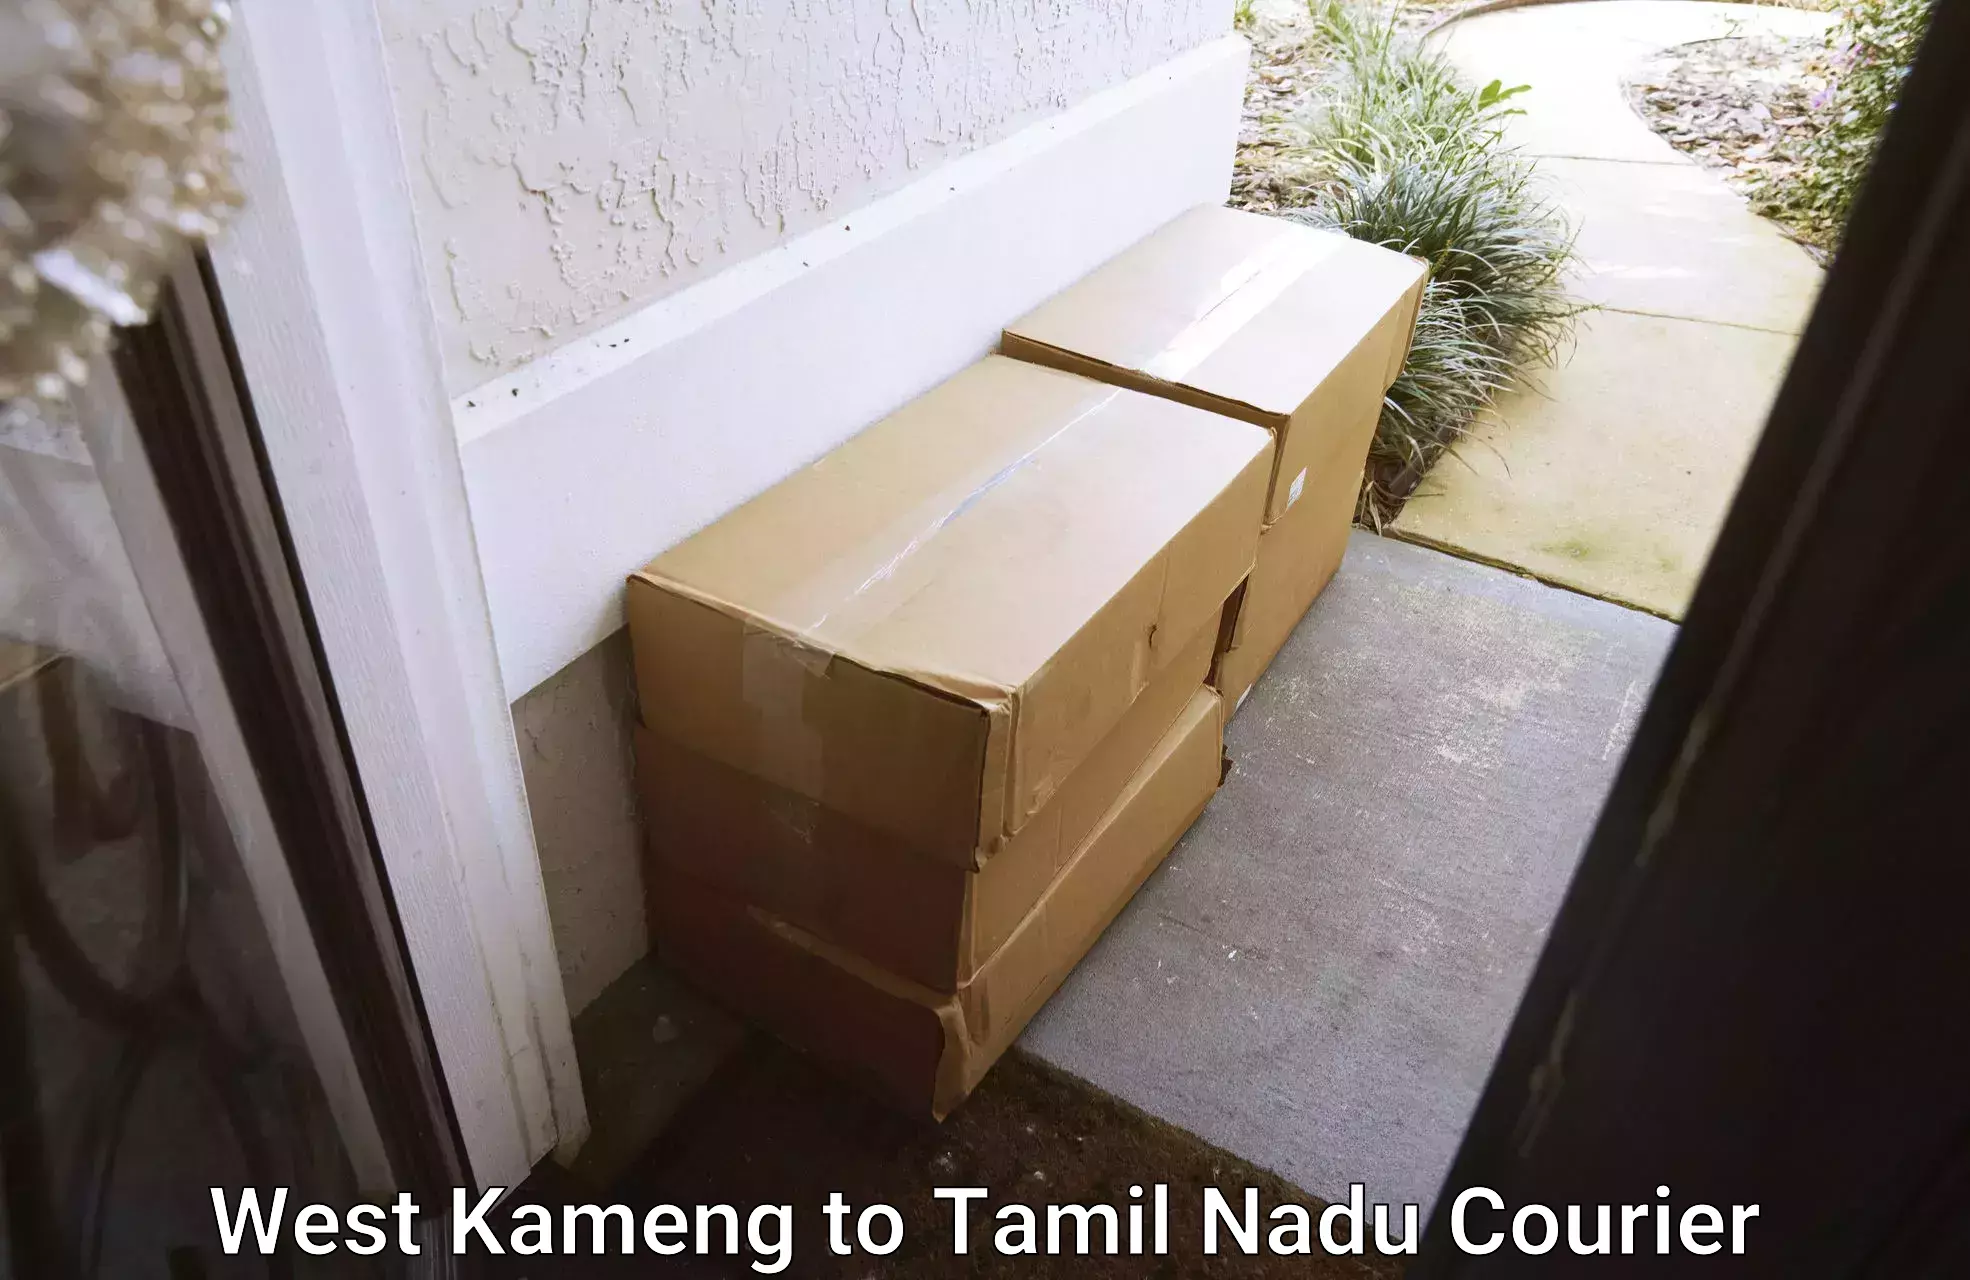 Professional courier handling West Kameng to Udumalpet